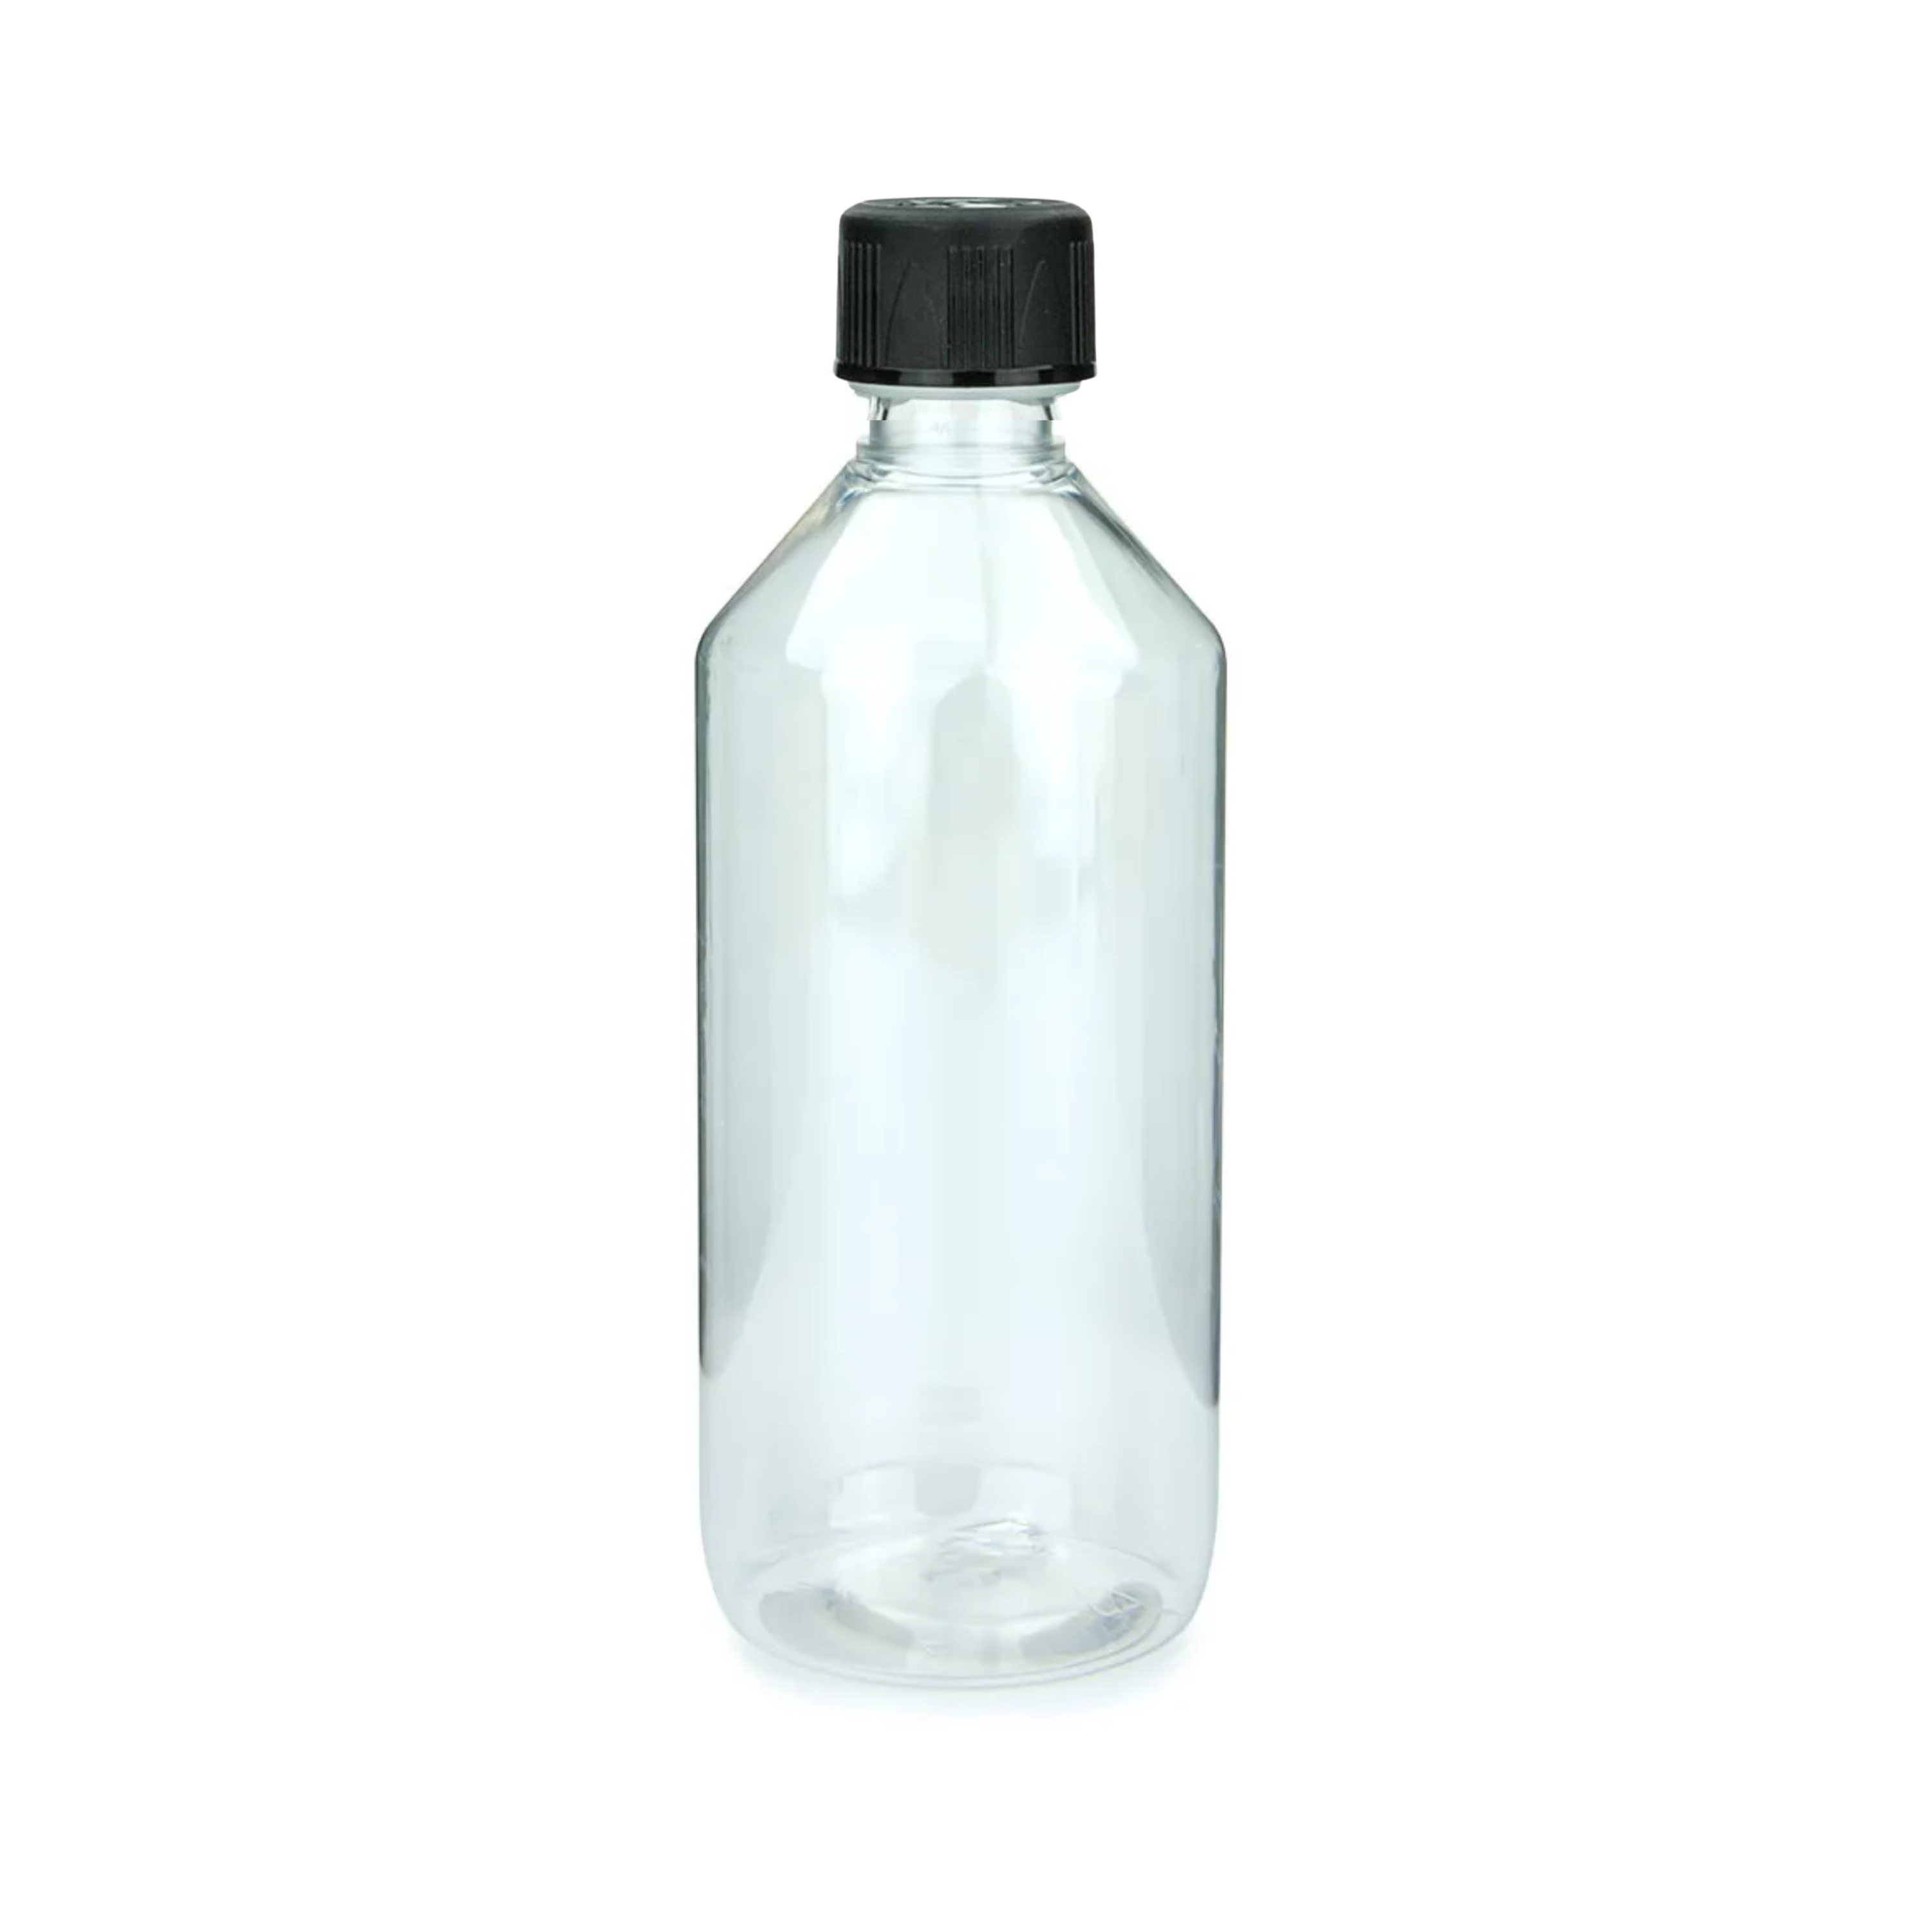 Laborflasche 500 ml, Chemikalienflasche, PET Kunststoff mit Schraubverschluss